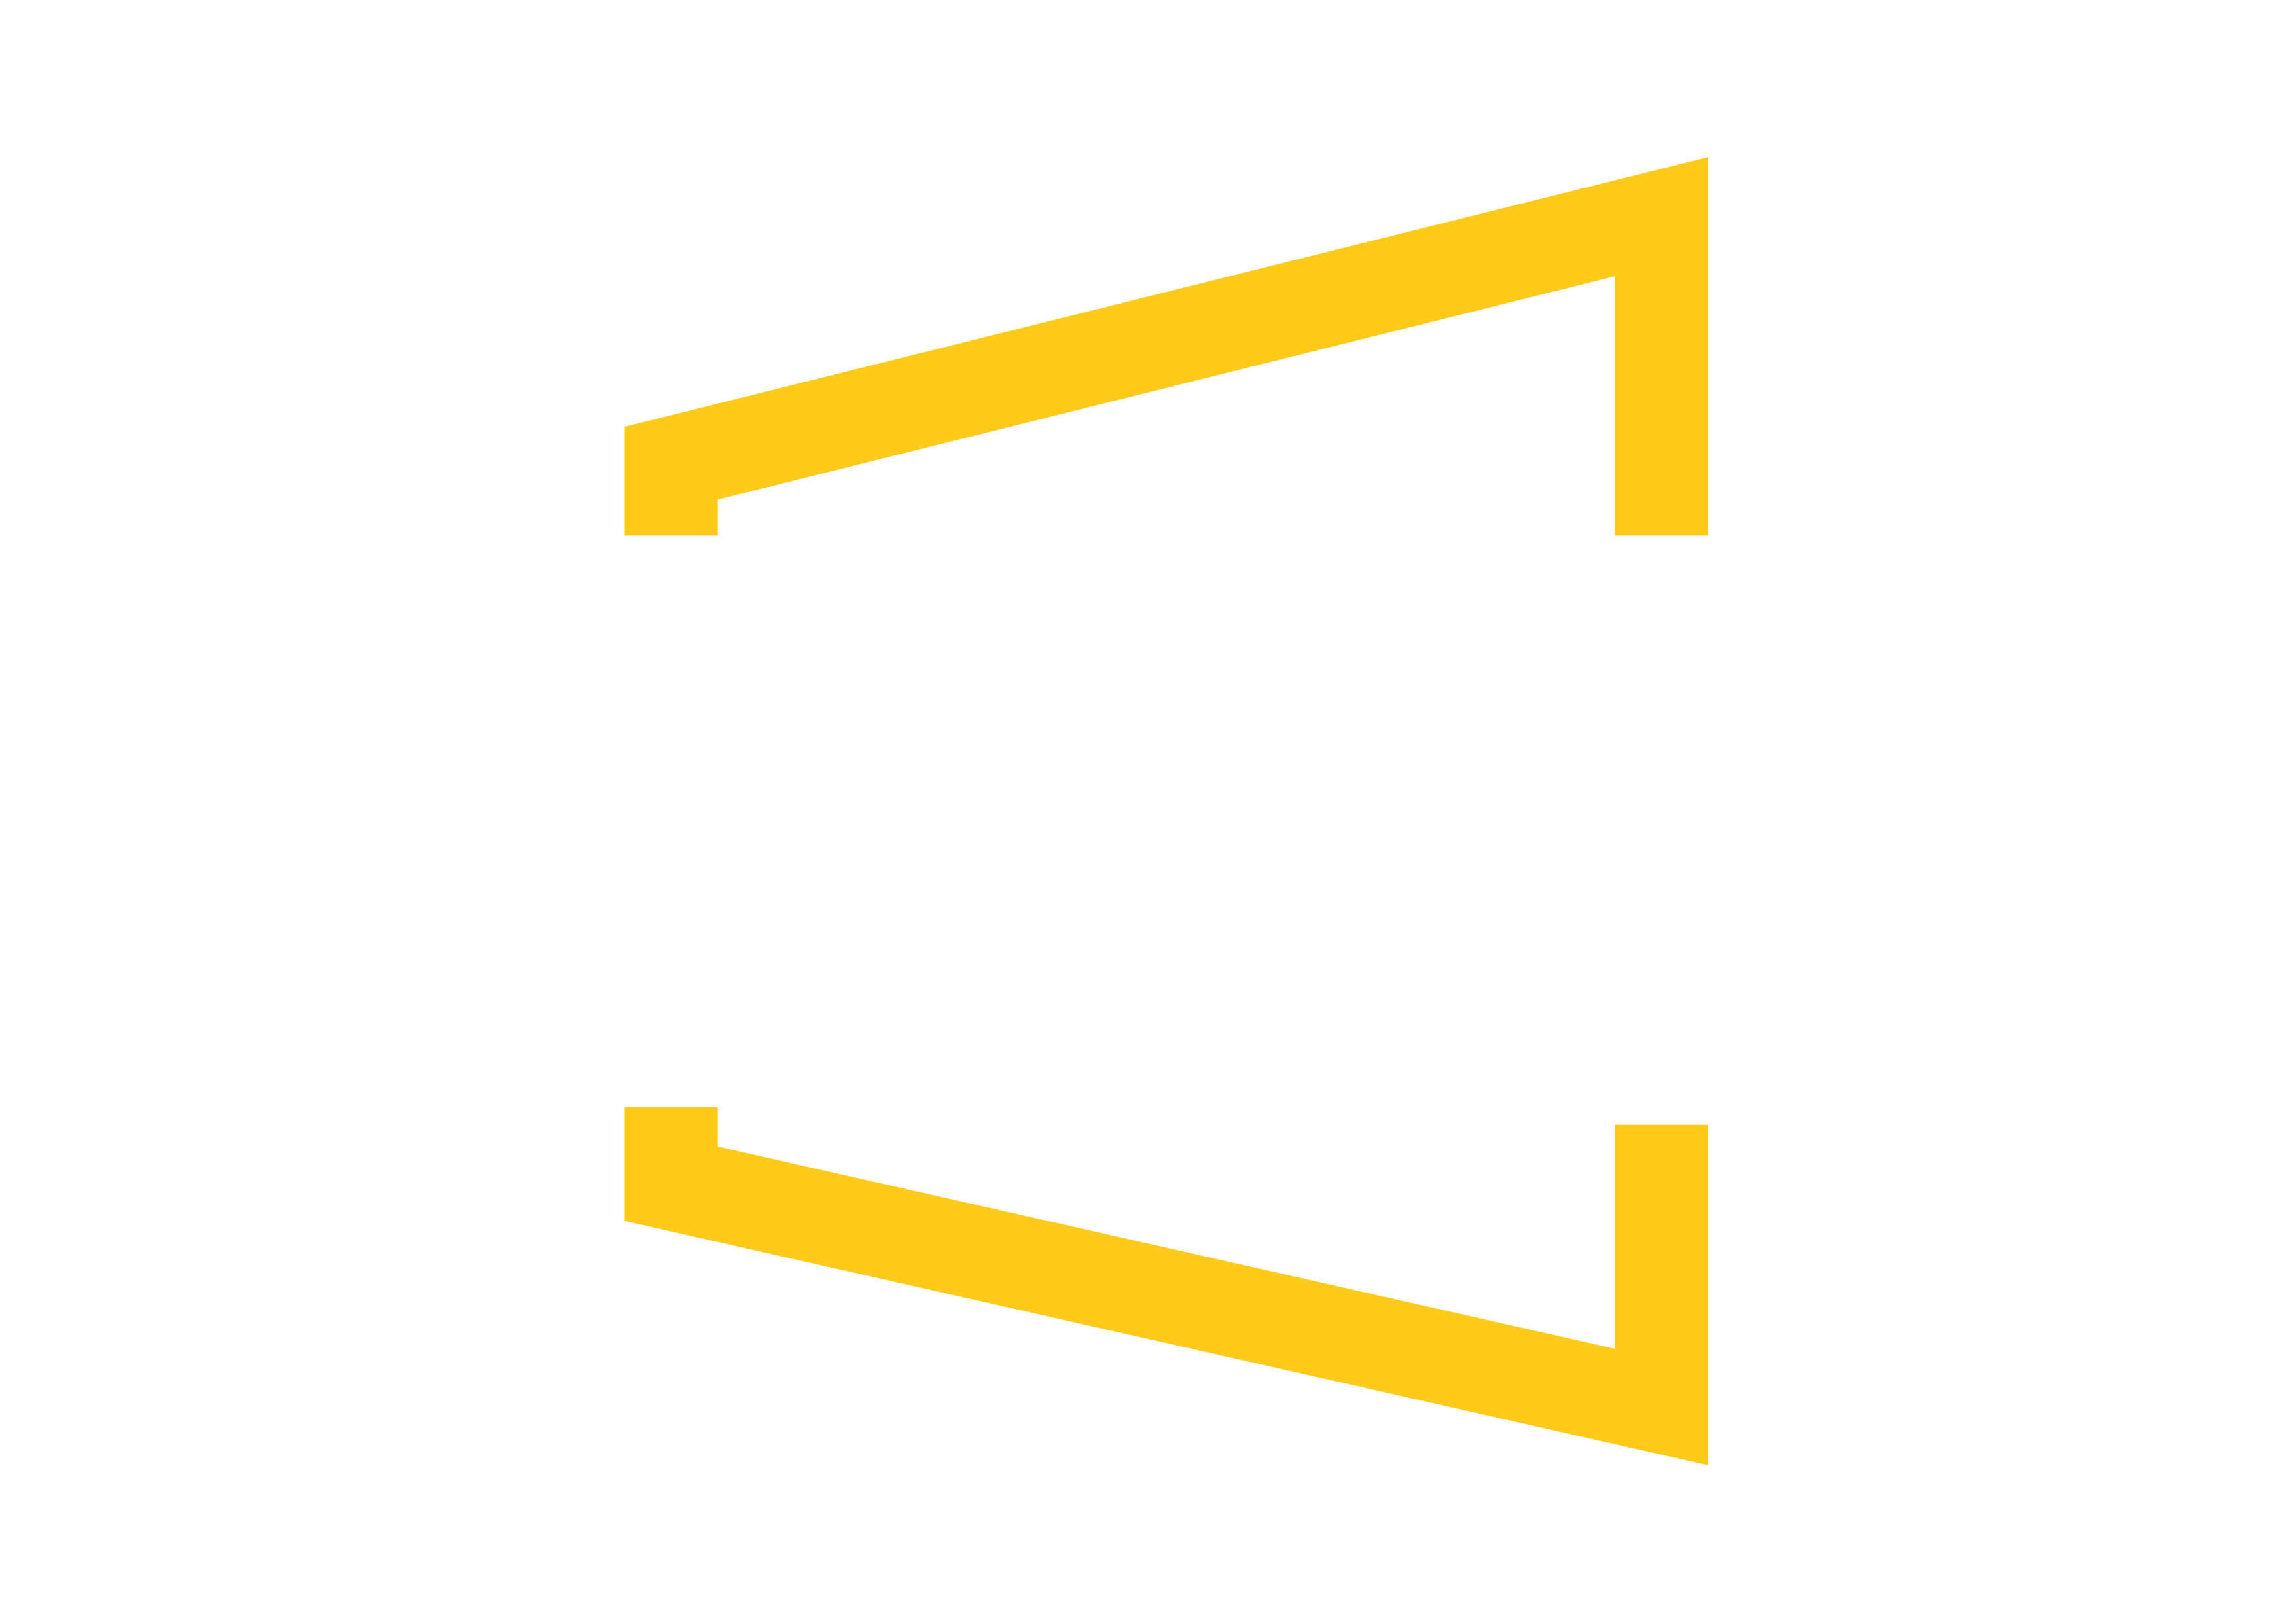 Prestige Framing